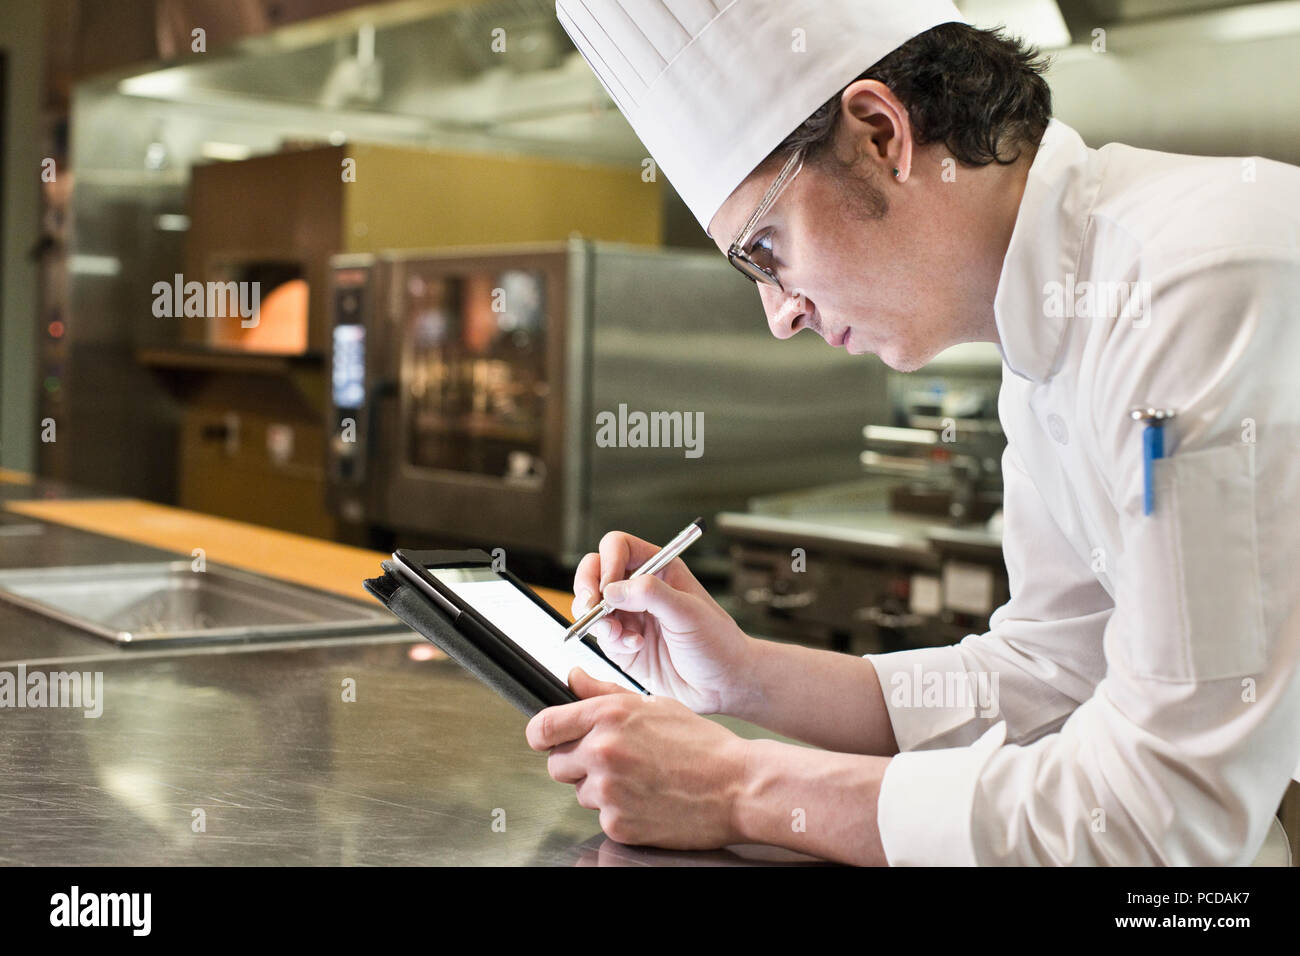 Ein Kaukasier Männlich Chef arbeiten auf ein Notebook in einer gewerblichen Küche. Stockfoto